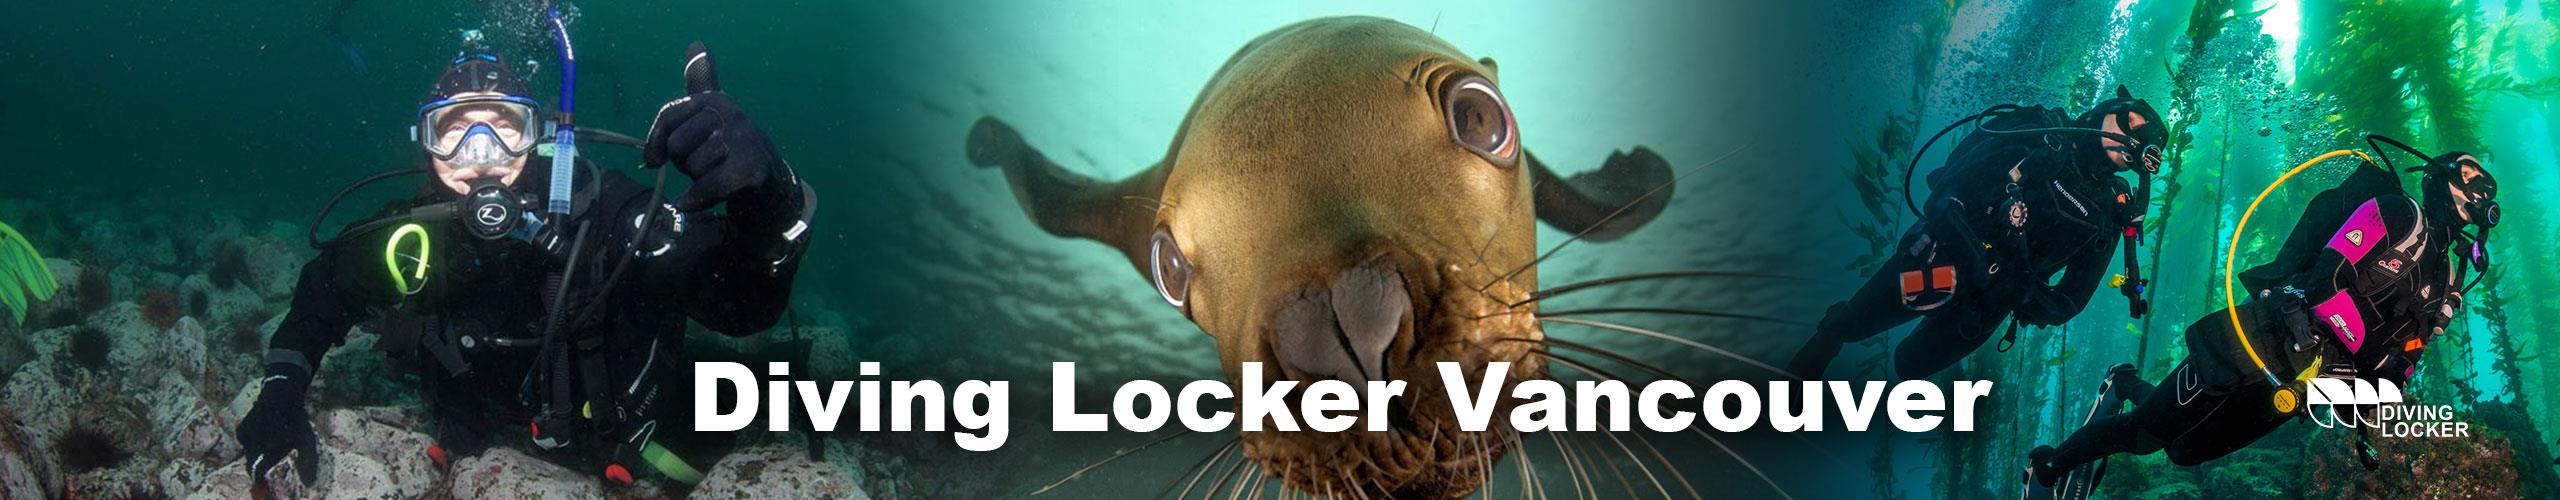 Diving Locker